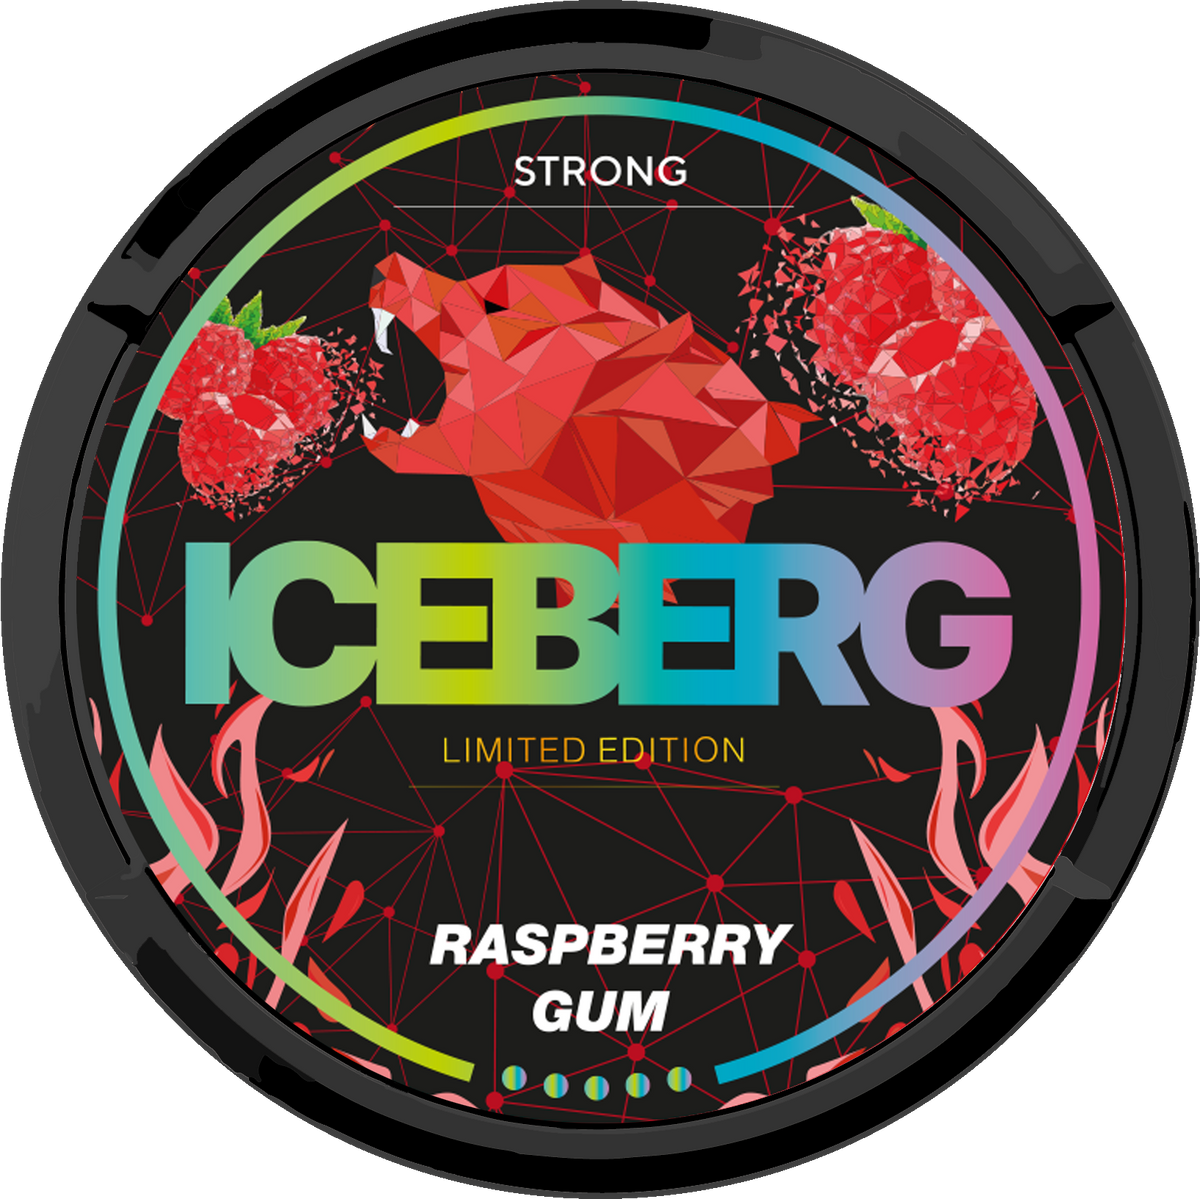 ICEBERG Raspberry Gum Strong